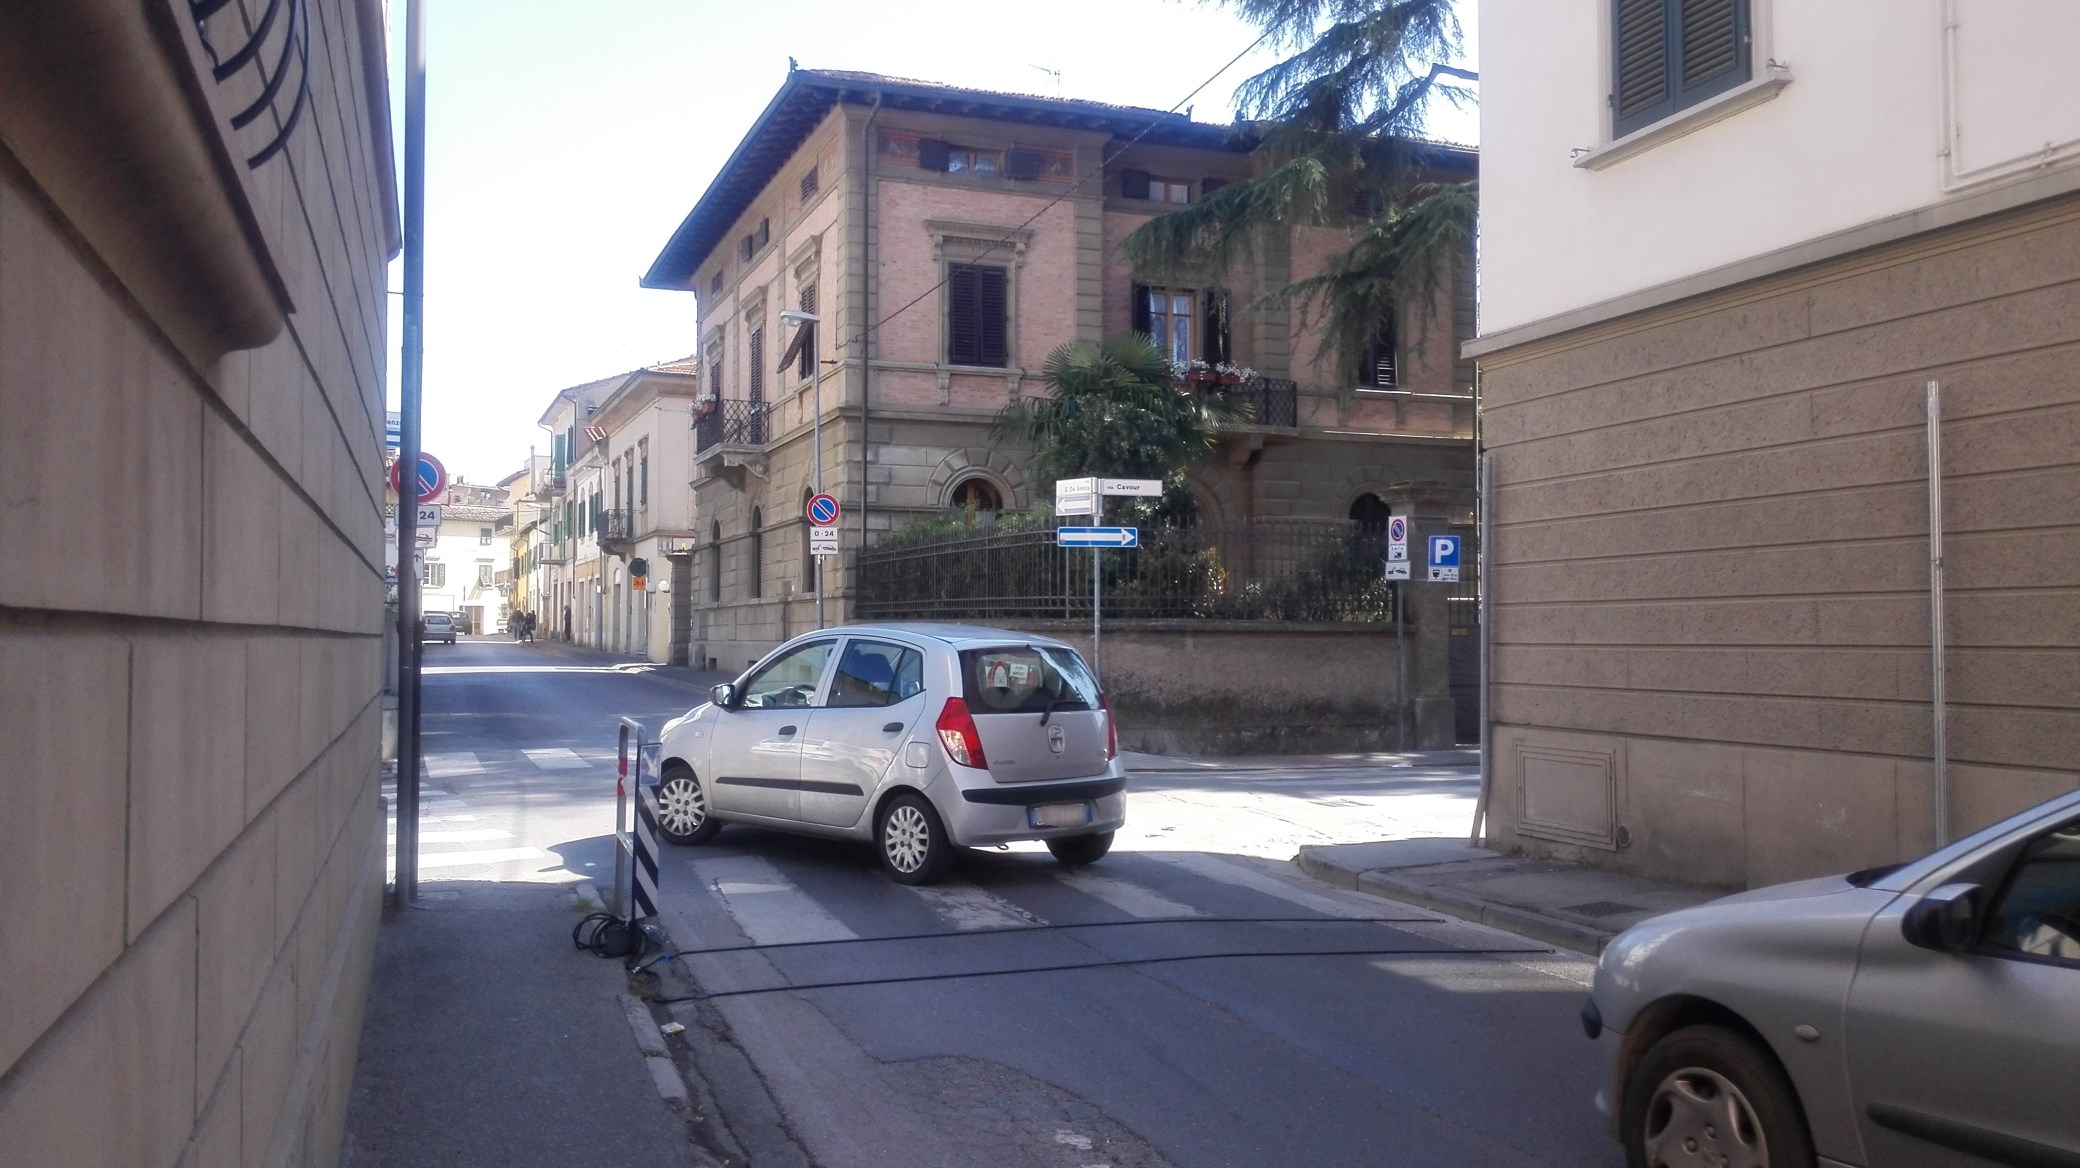 Via De Amicis angolo via Lenzoni, via Cavour